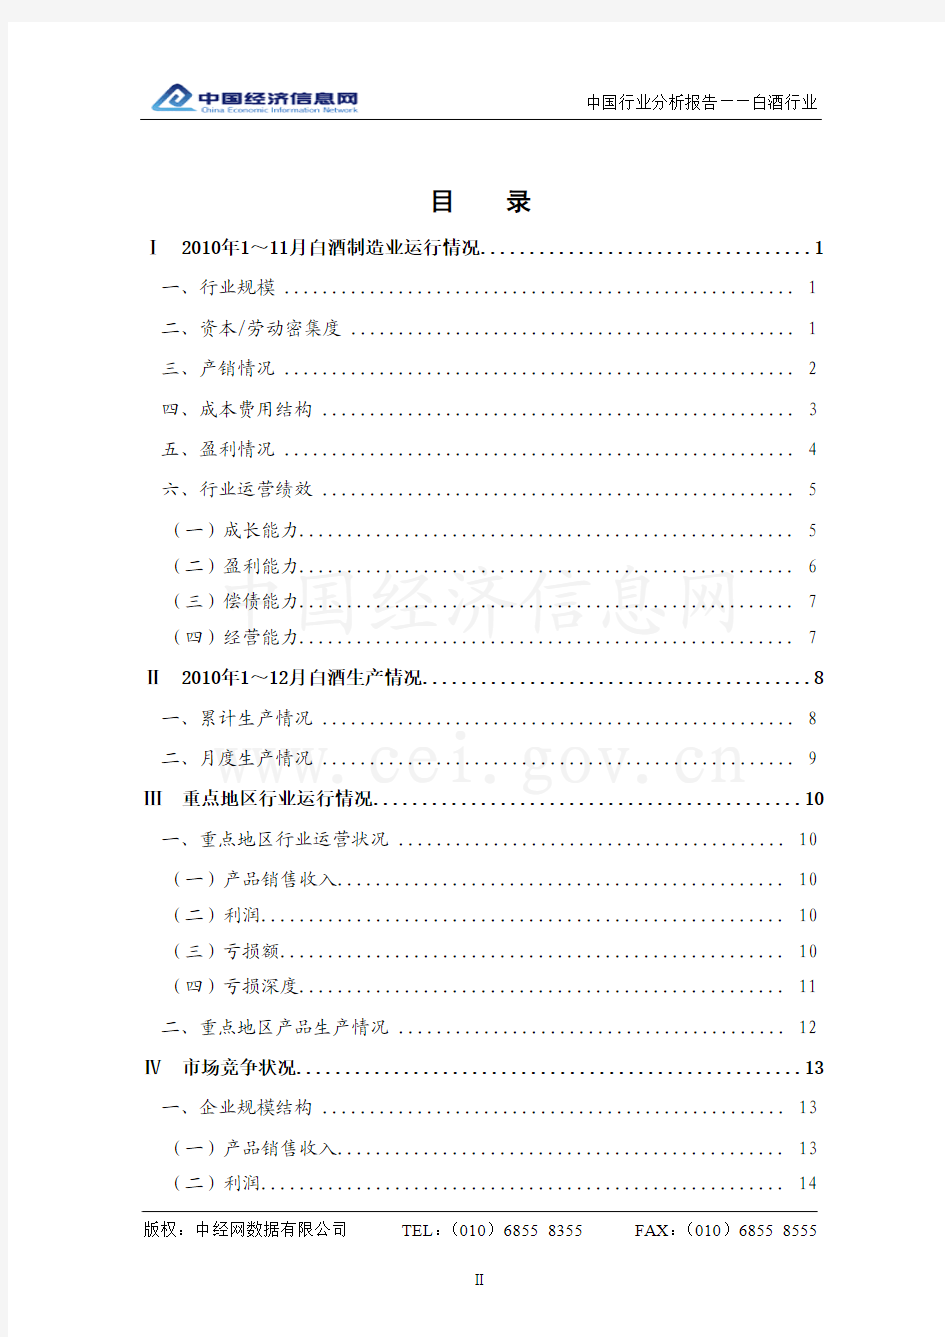 中国白酒行业分析报告(2010年4季度)